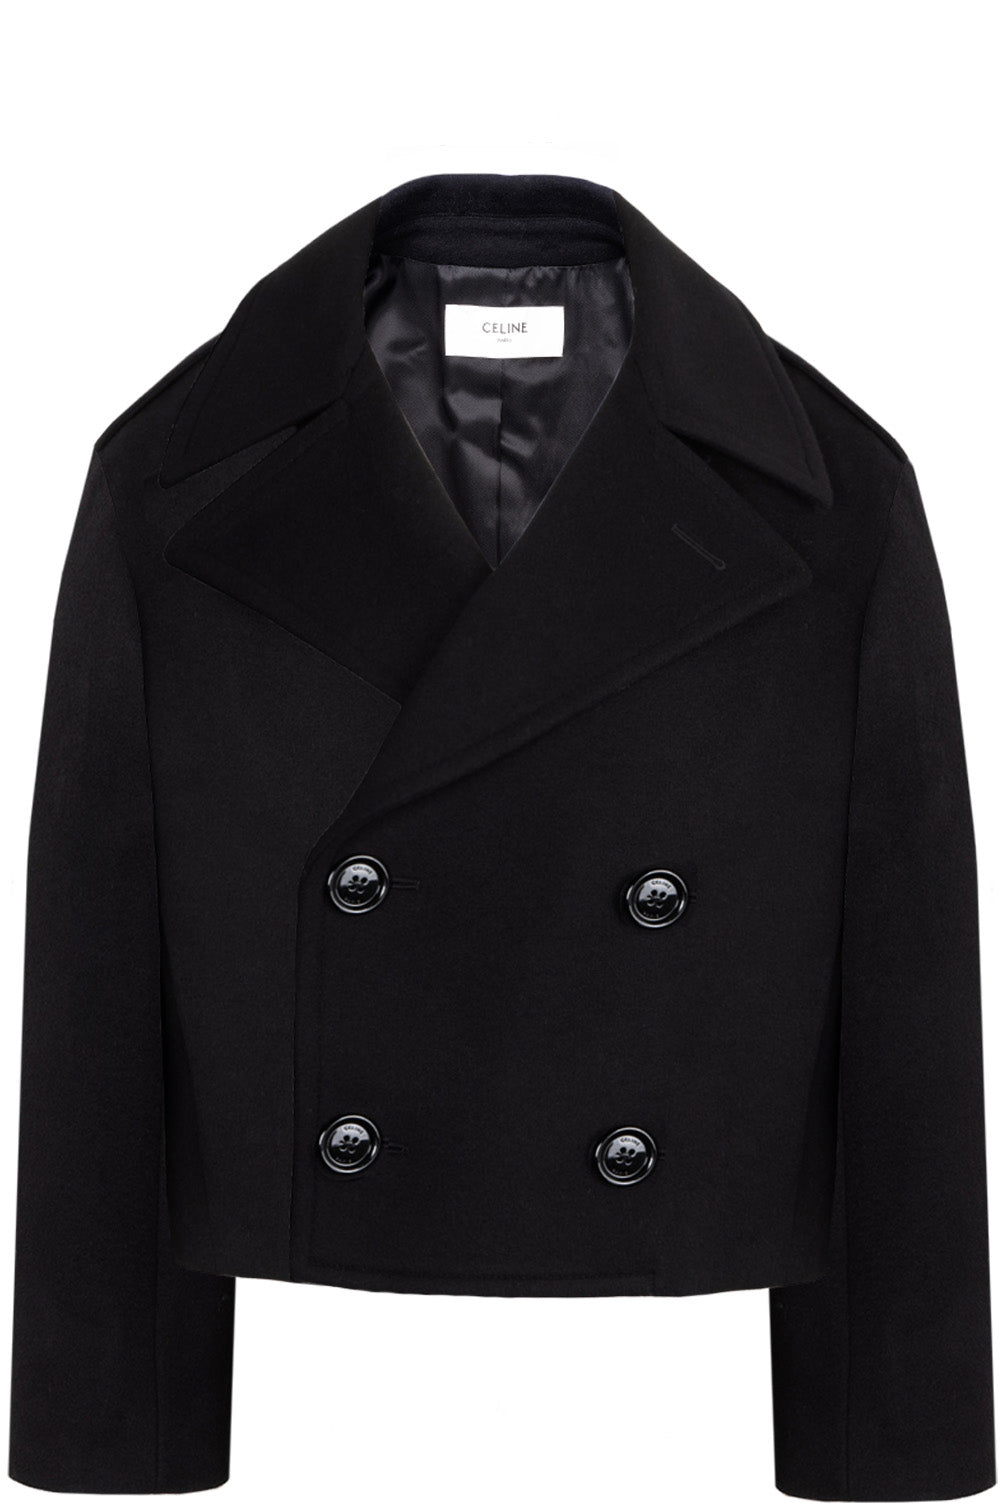 CELINE Jacket Cashmere Black